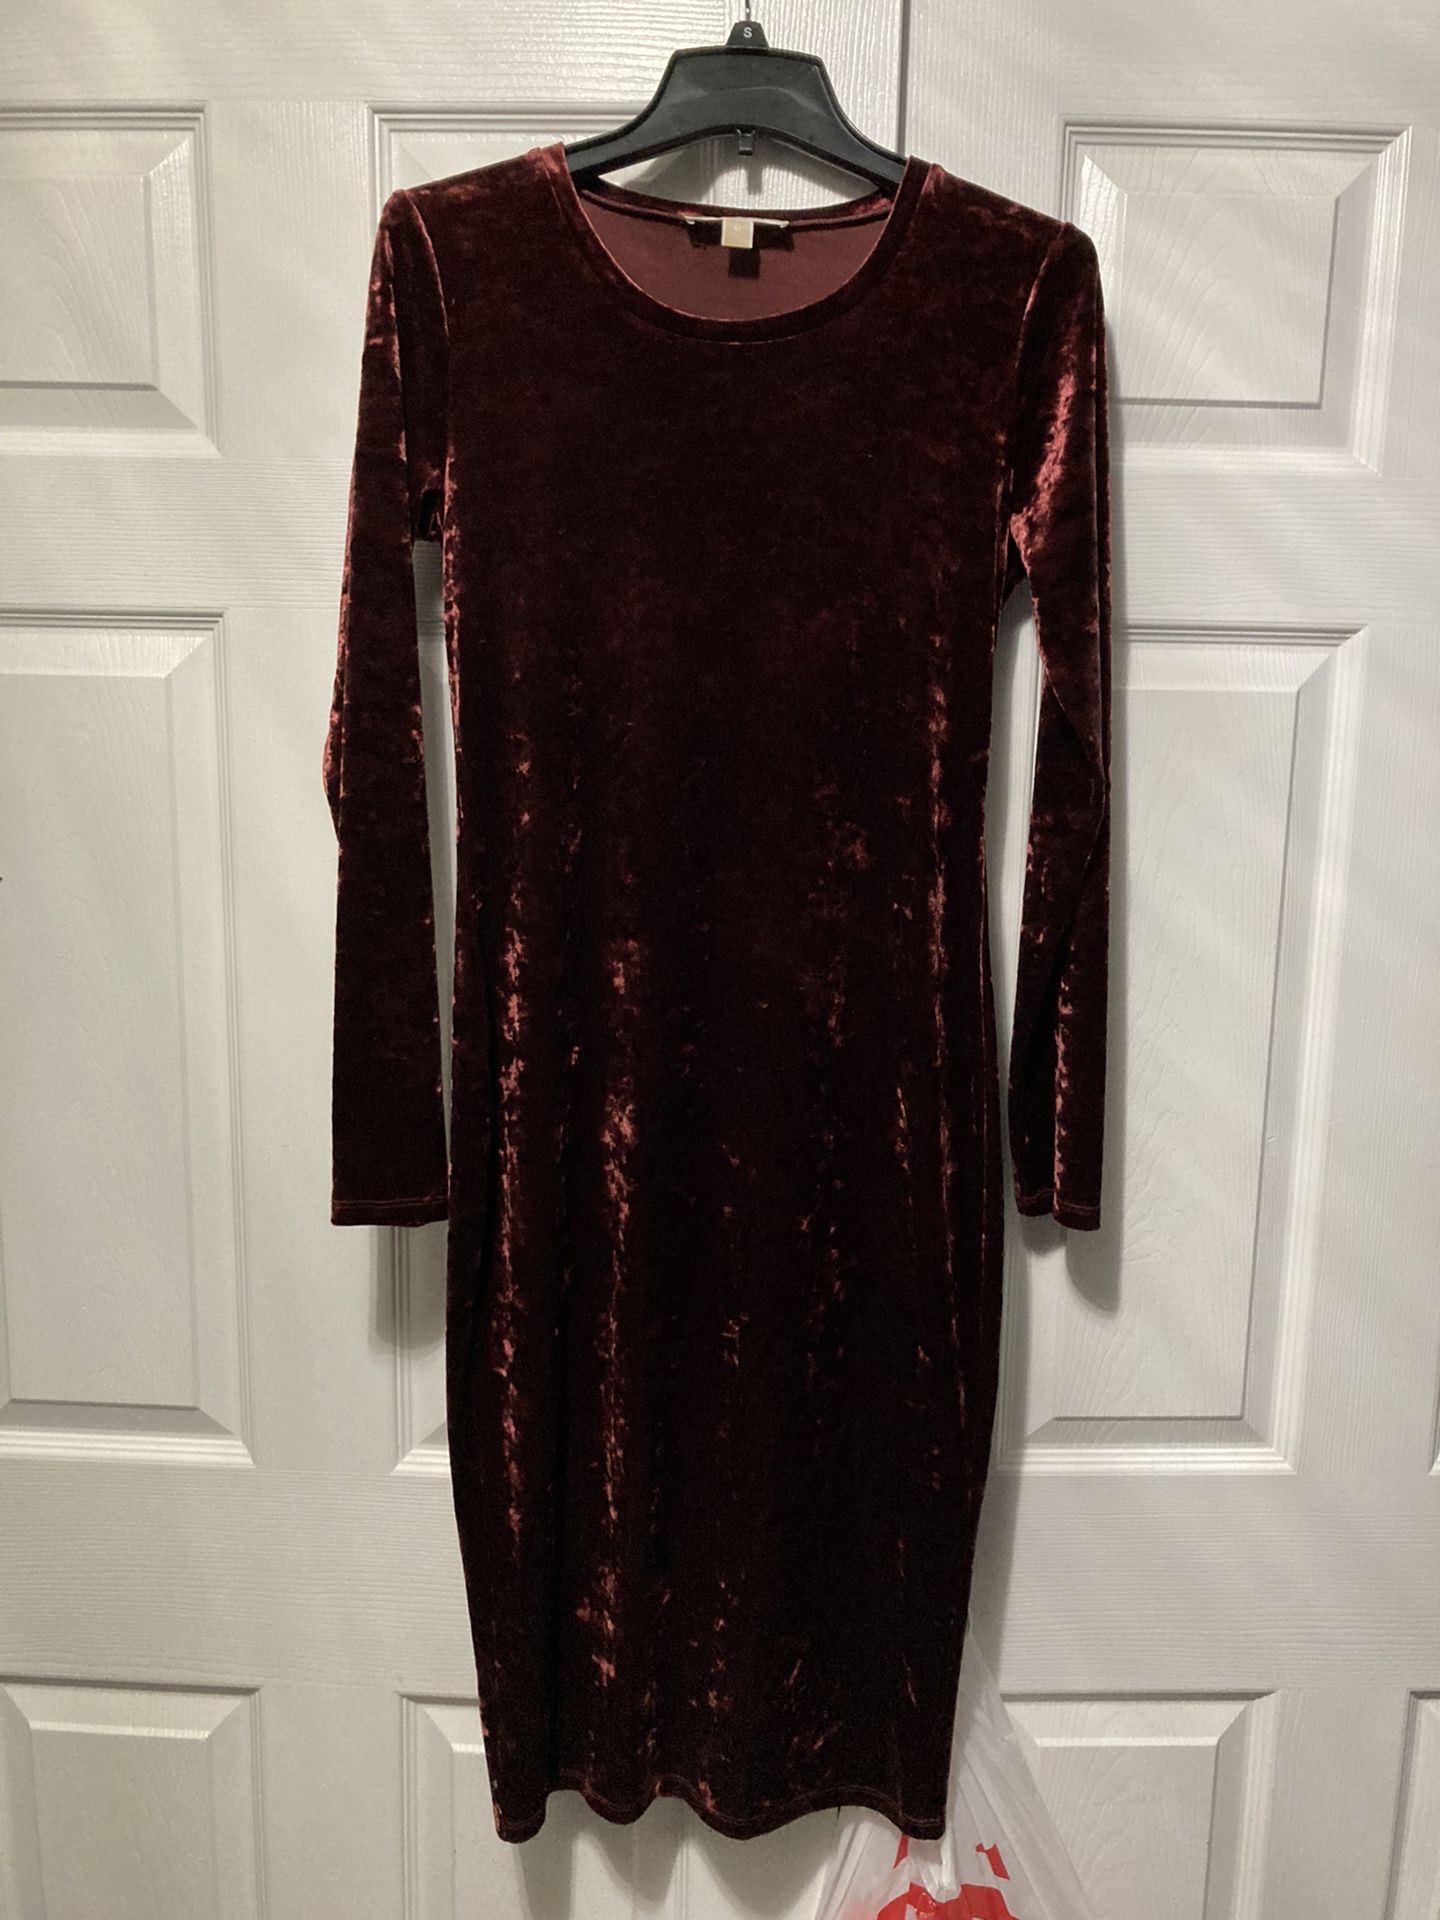 Michael Kors Velvet dress kinlobg sleeve, knee length, size medium, color burgundy